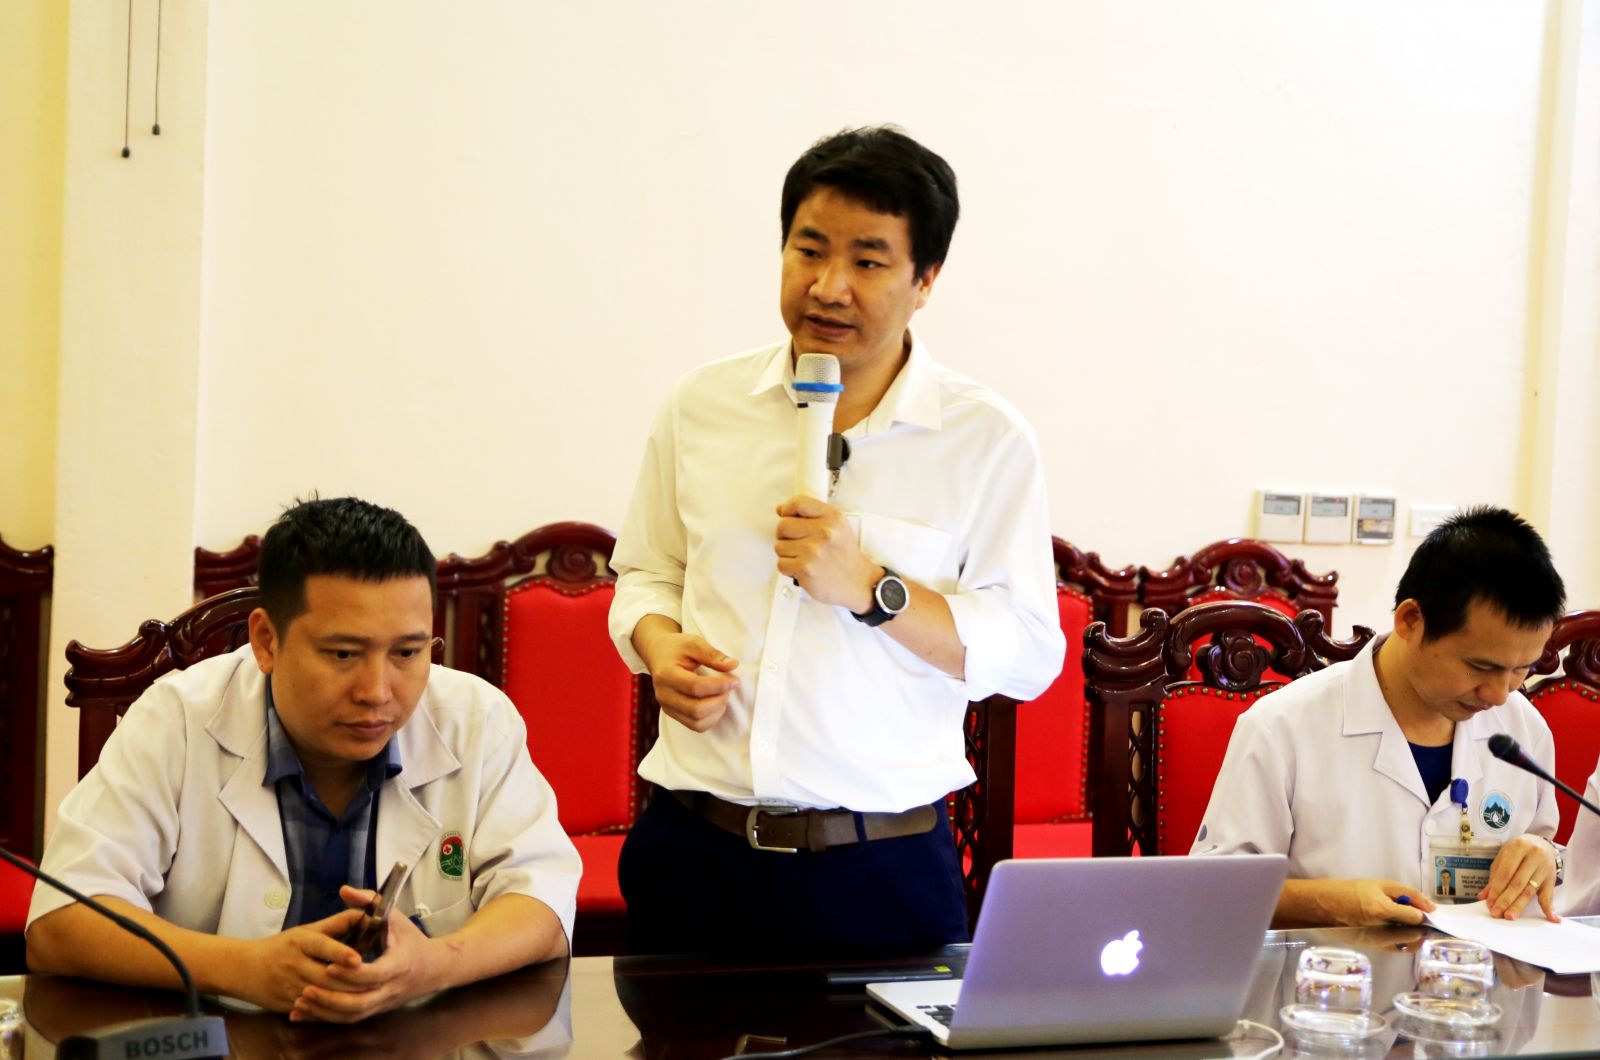 Bệnh viện Nhi Trung ương chuyển giao kỹ thuật cho bác sỹ Hà Tĩnh